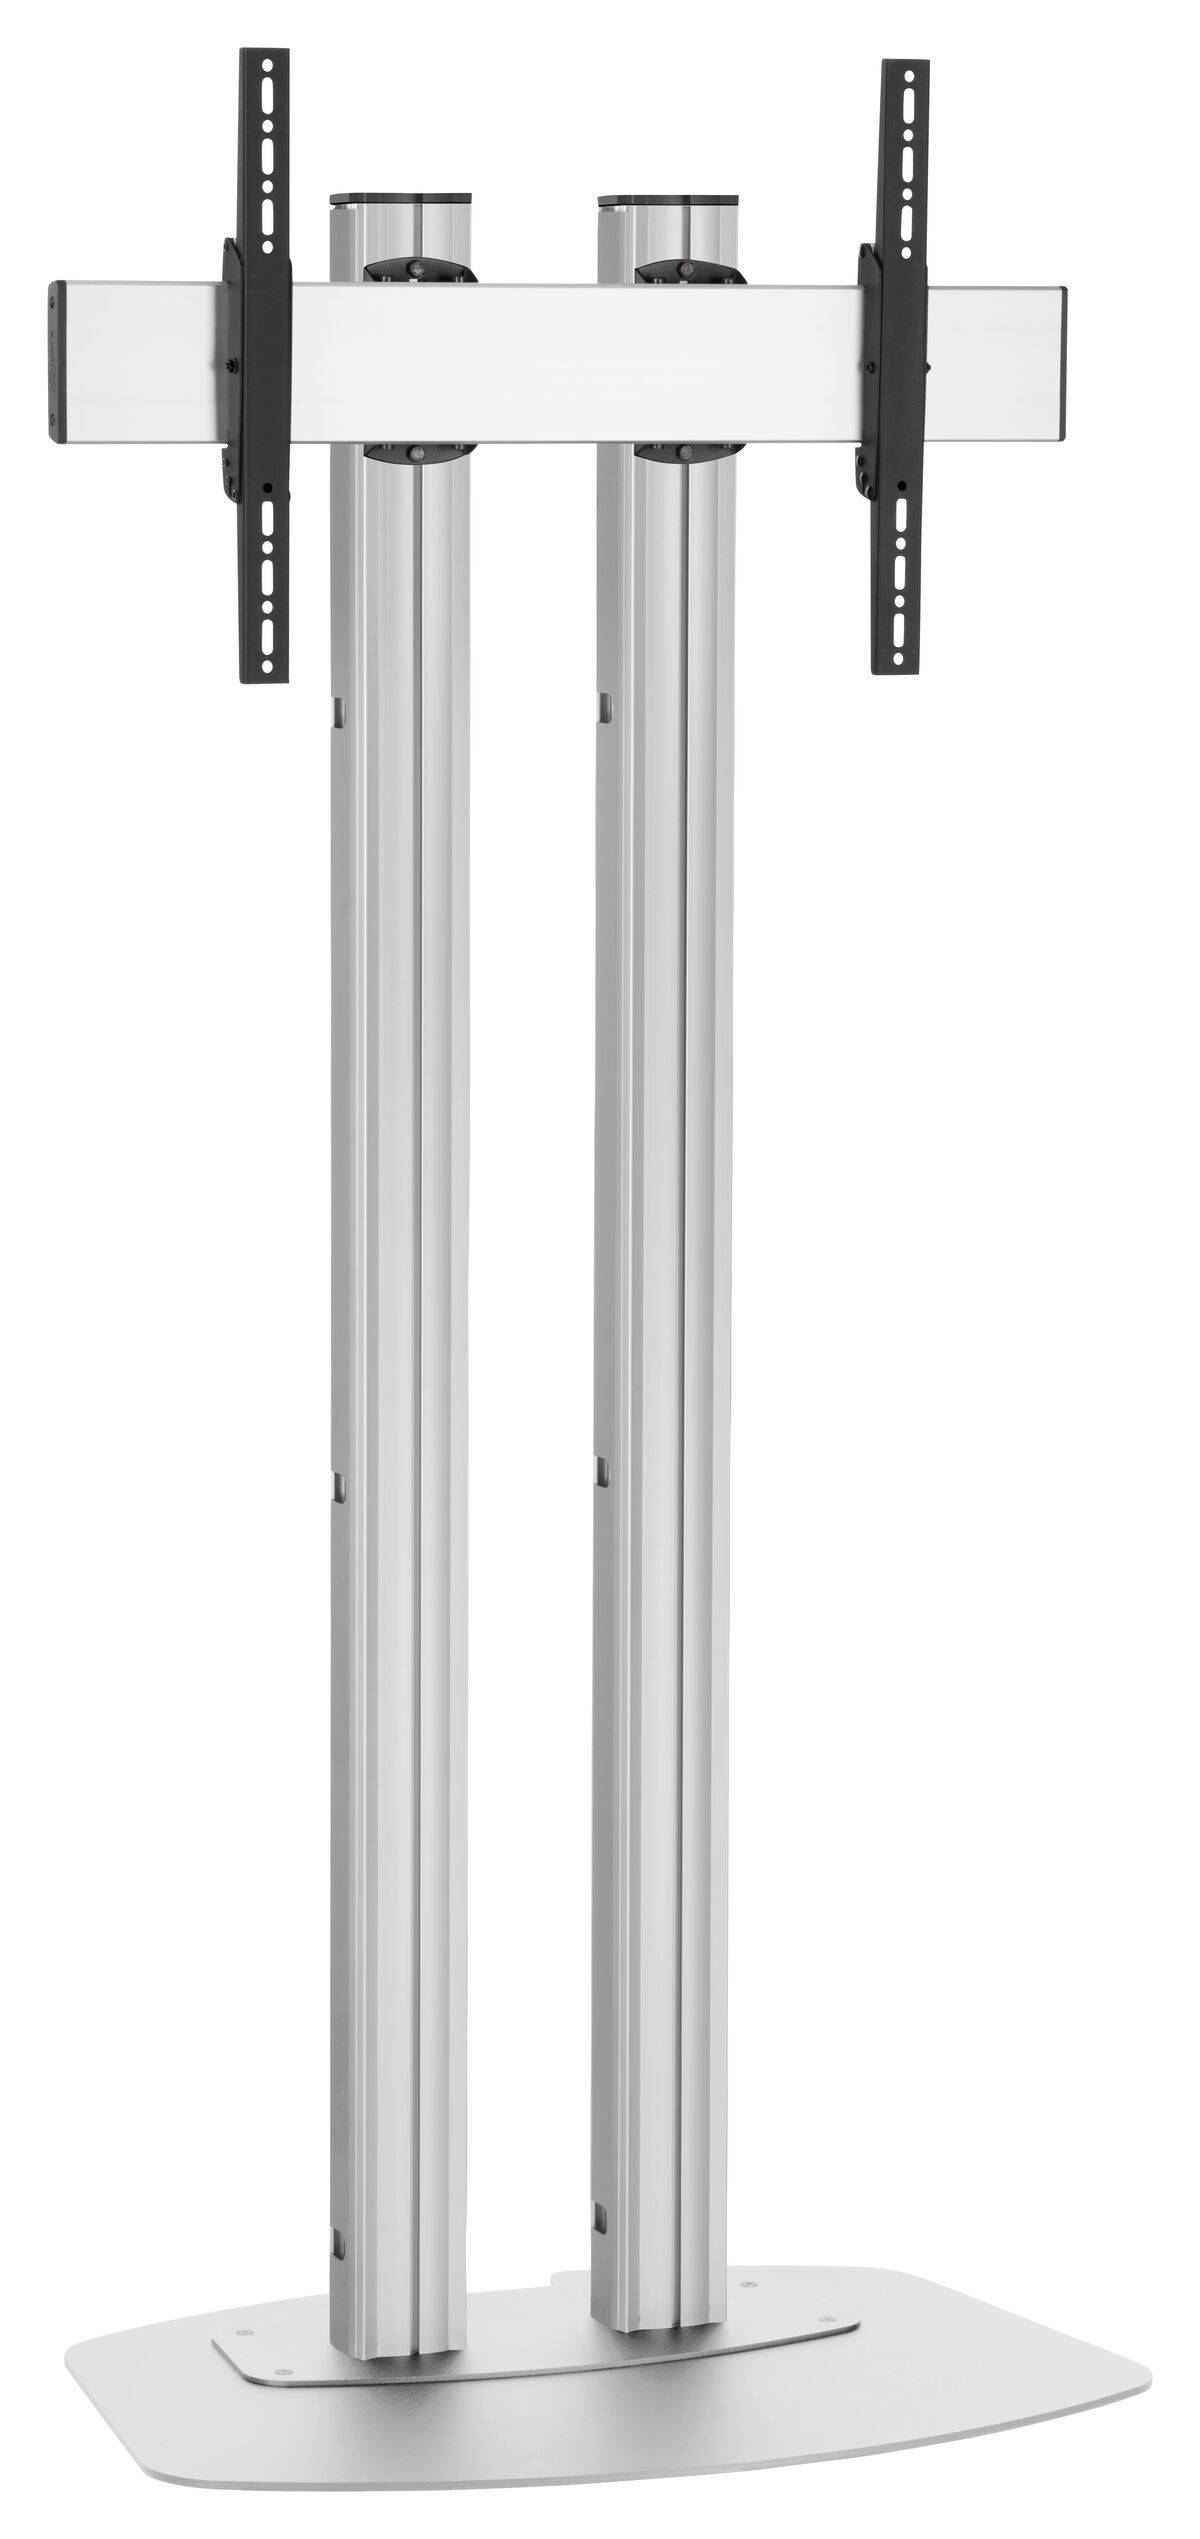 Vogel's FD1564S Floor stand - Product